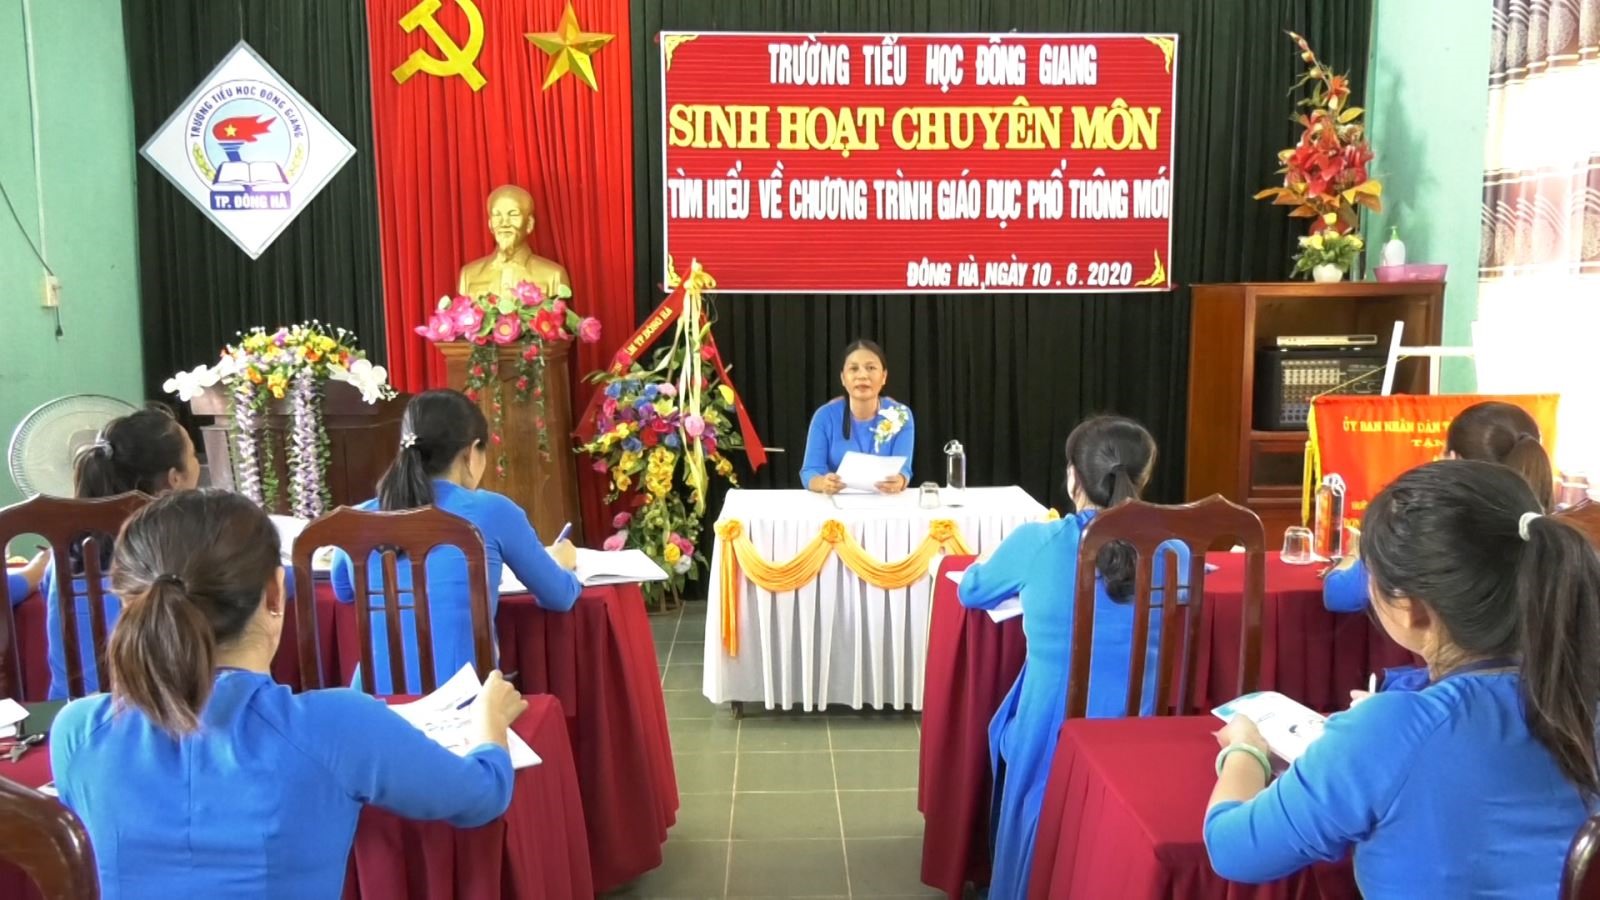 Buổi sinh hoạt chuyên môn của các cô giao Trường Tiều học Đông Giang chuẩn bị cho chương trình giáo dục phổ thông mới